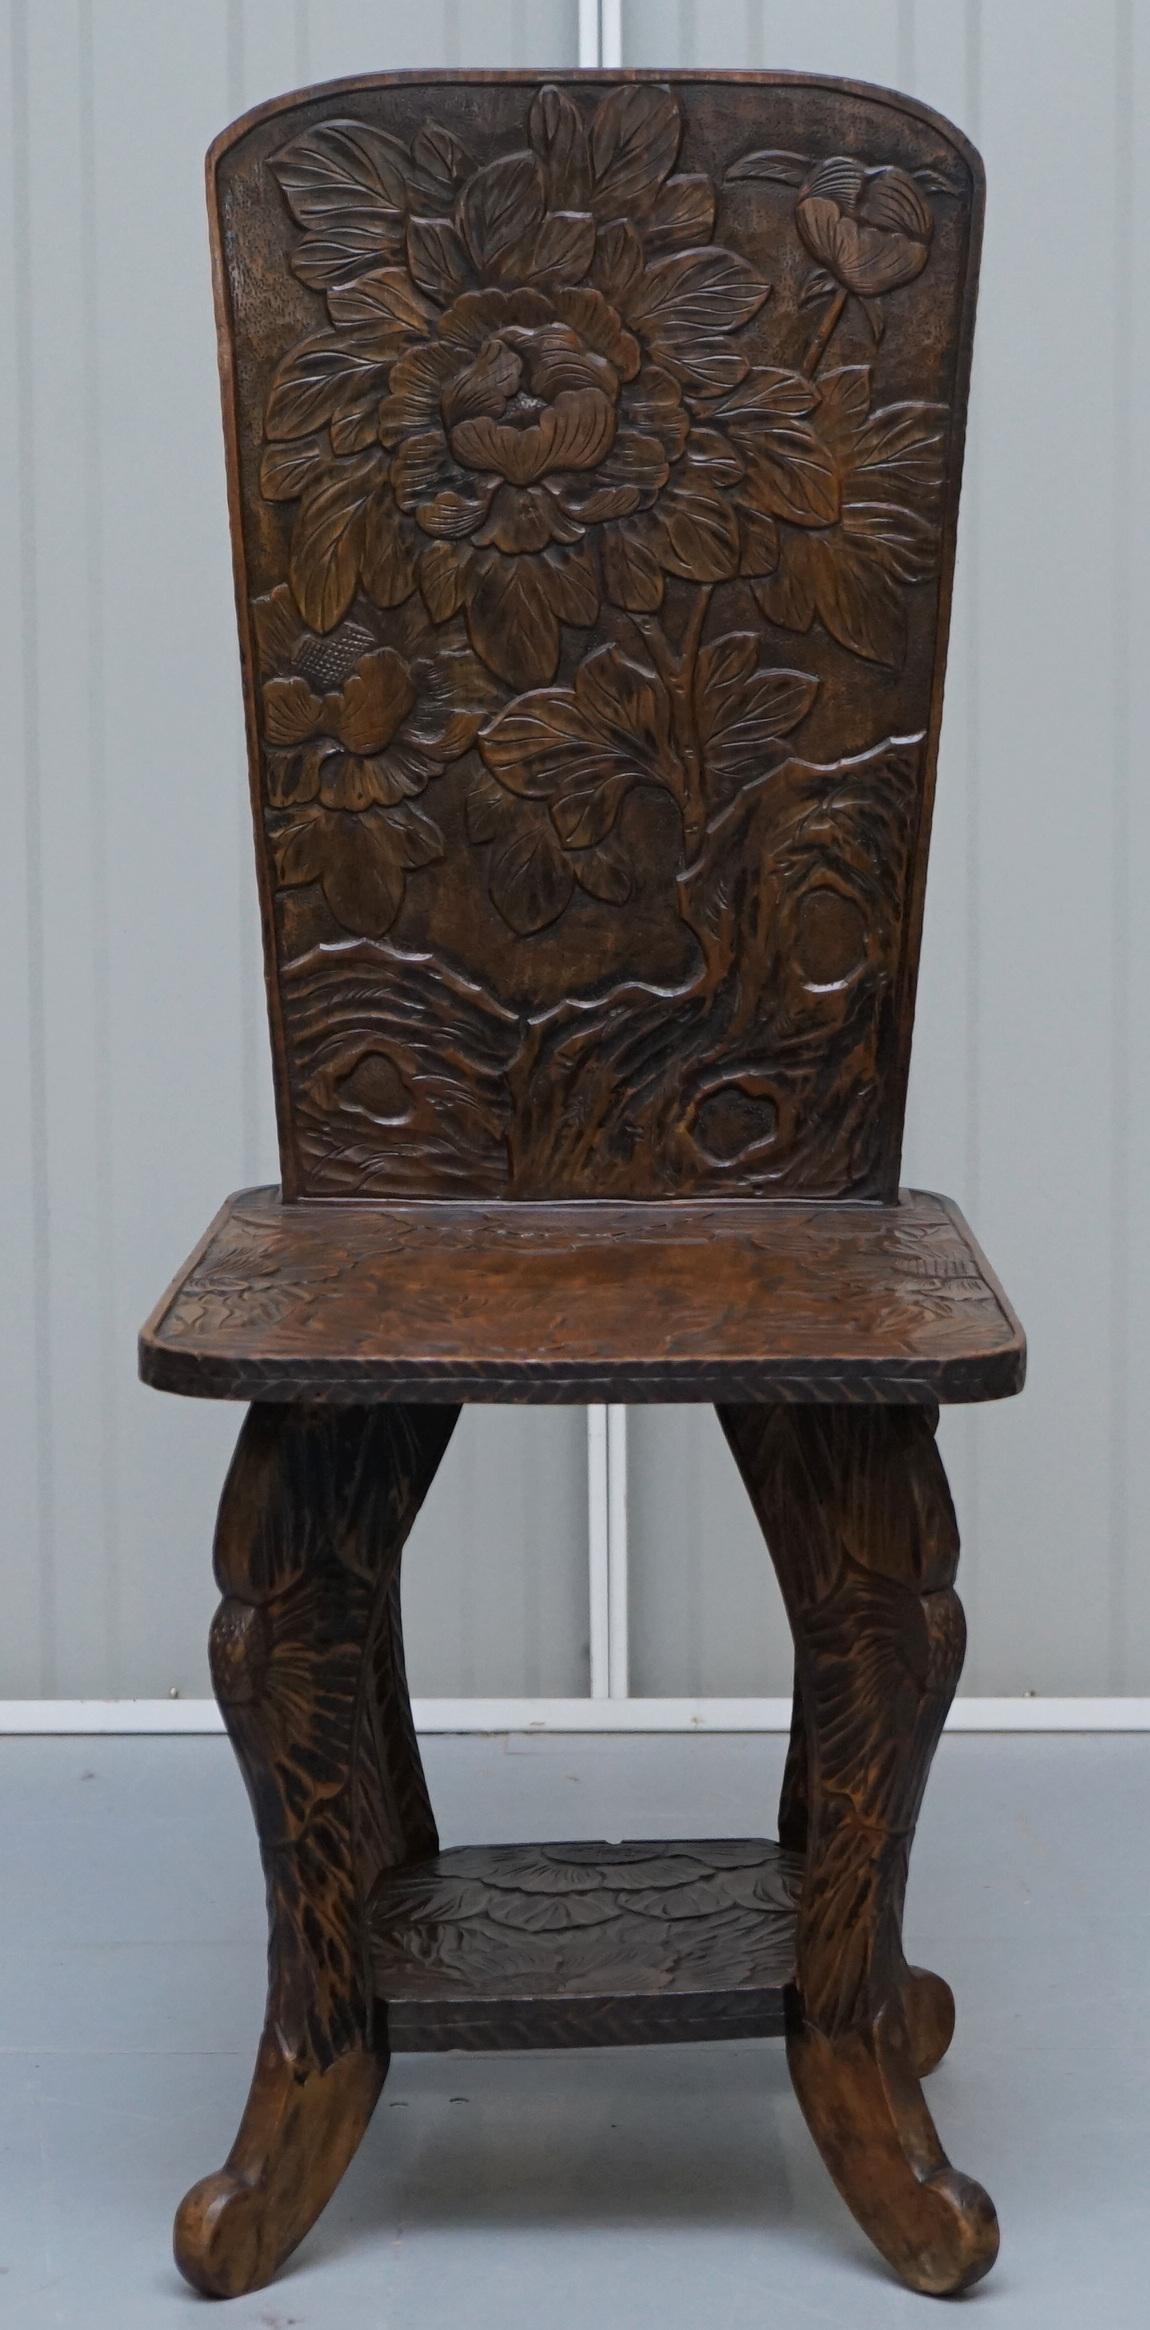 Wir sind erfreut, diese atemberaubende und außergewöhnlich seltene Original Liberty's London unterzeichnet Qing-Dynastie Stuhl

Ich habe noch nie einen dieser Stühle gesehen, ich habe schon einige der Beistelltische gekauft und habe sogar 2-3